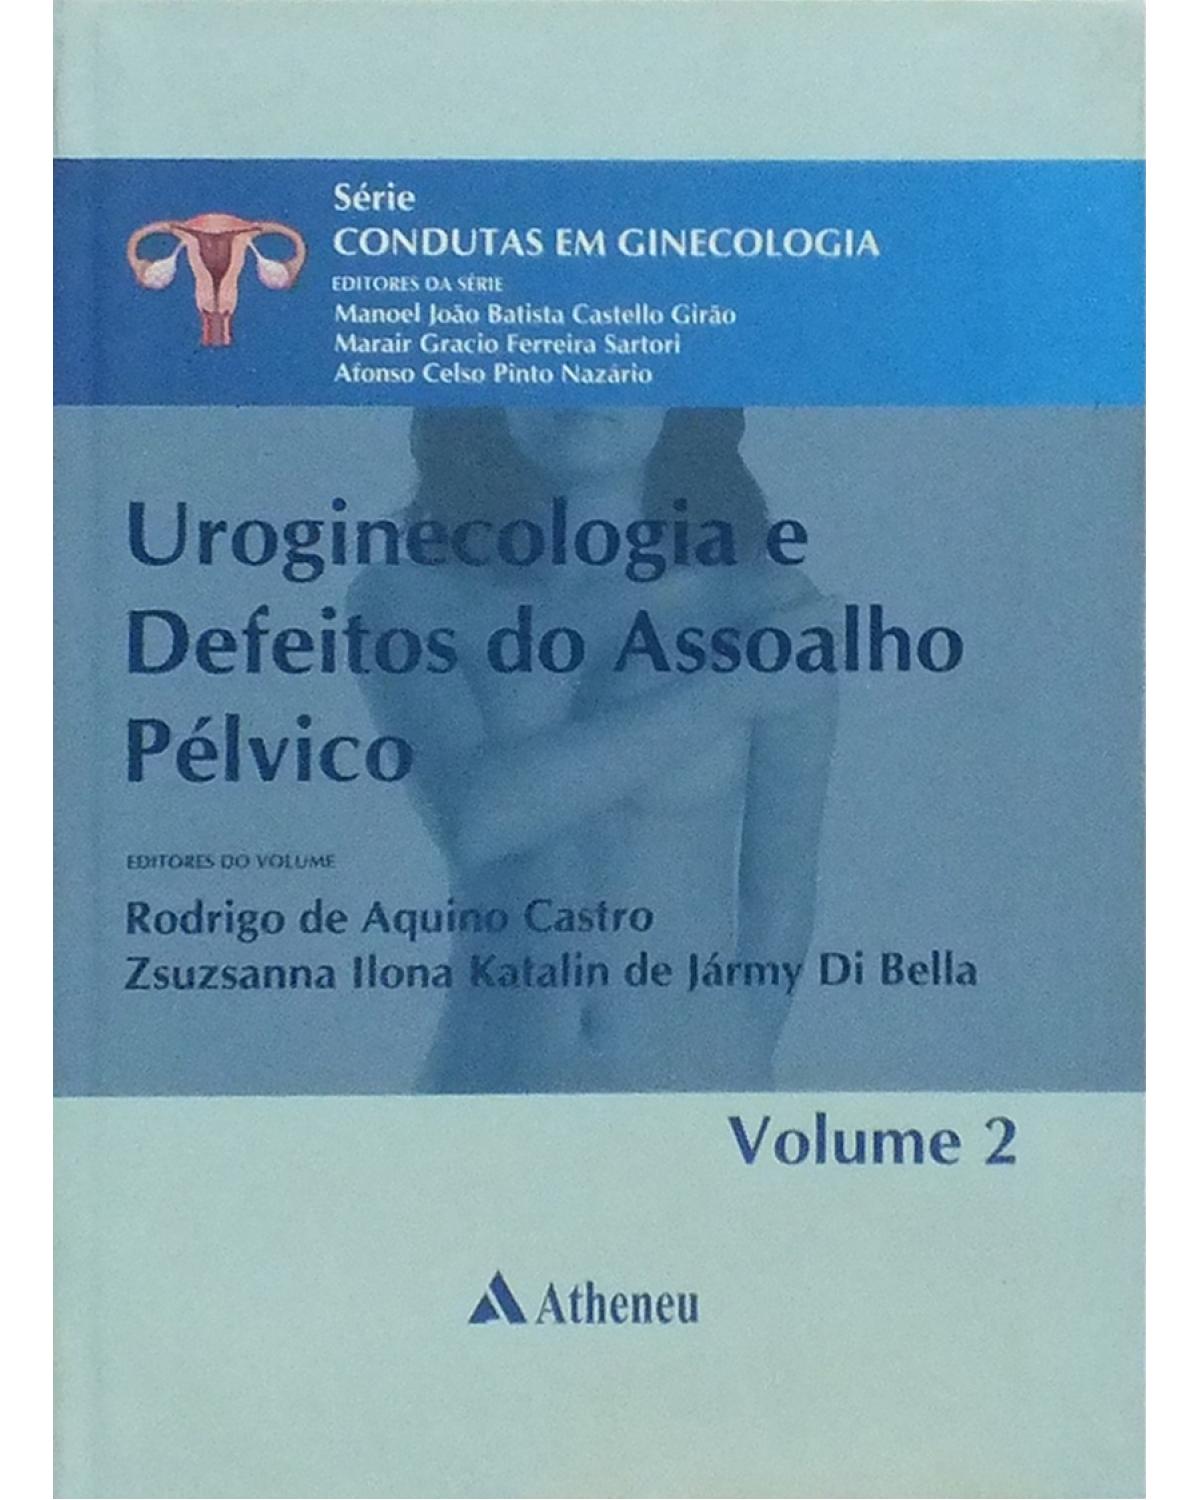 Uroginecologia e defeitos do assoalho pélvico - Volume 2:  - 1ª Edição | 2011